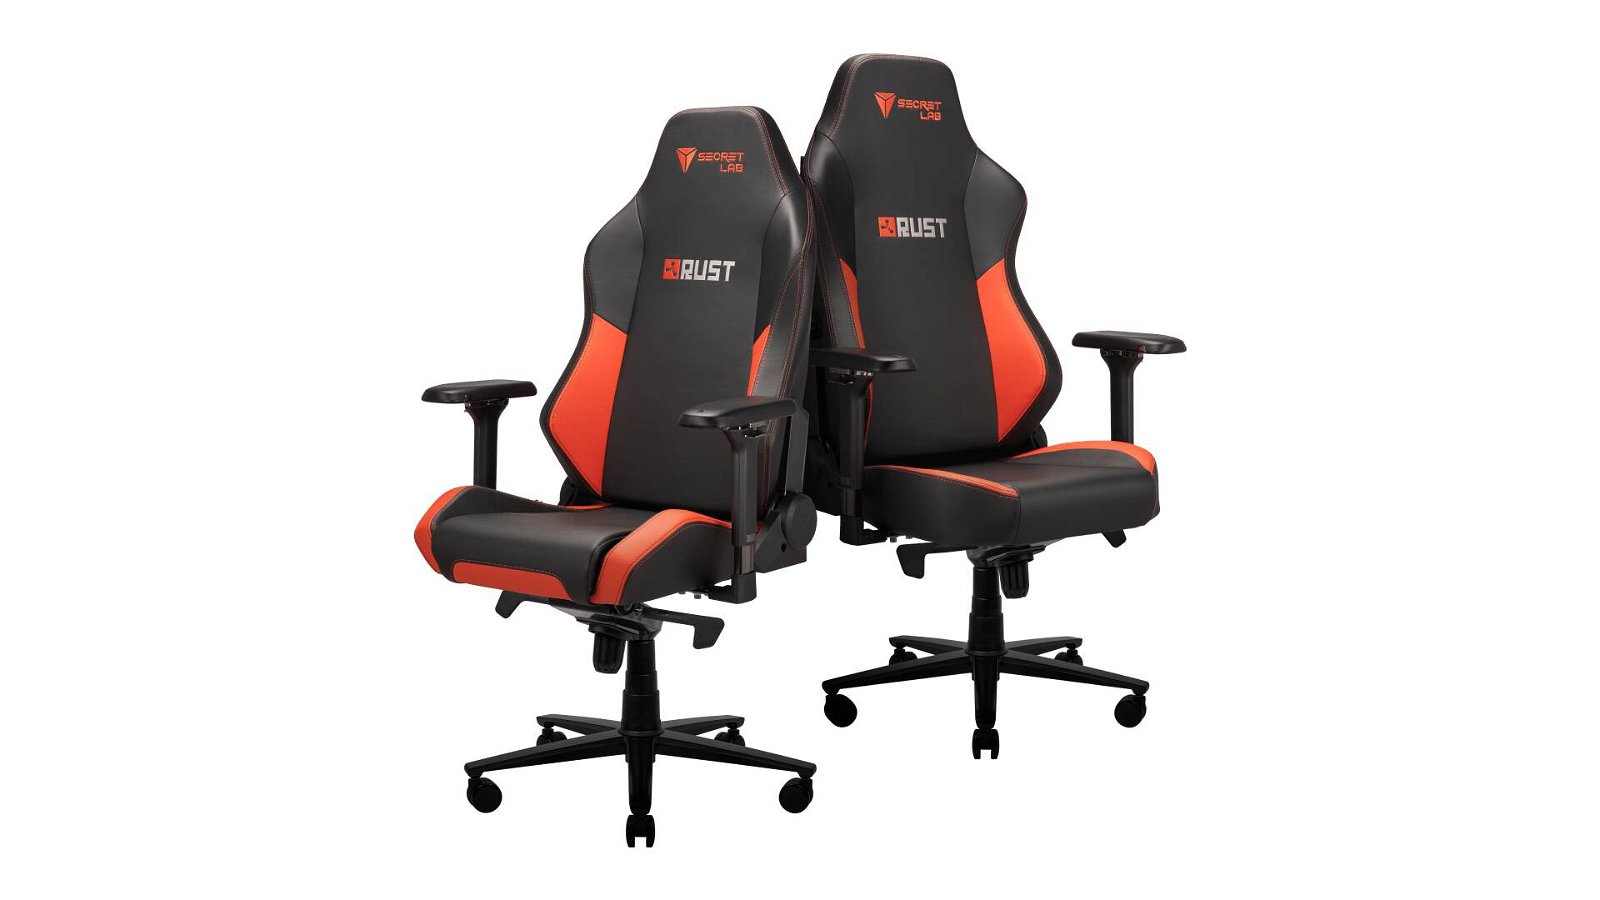 Immagine di Secretlab Rust Edition: la sedia da gaming con un DLC esclusivo incluso